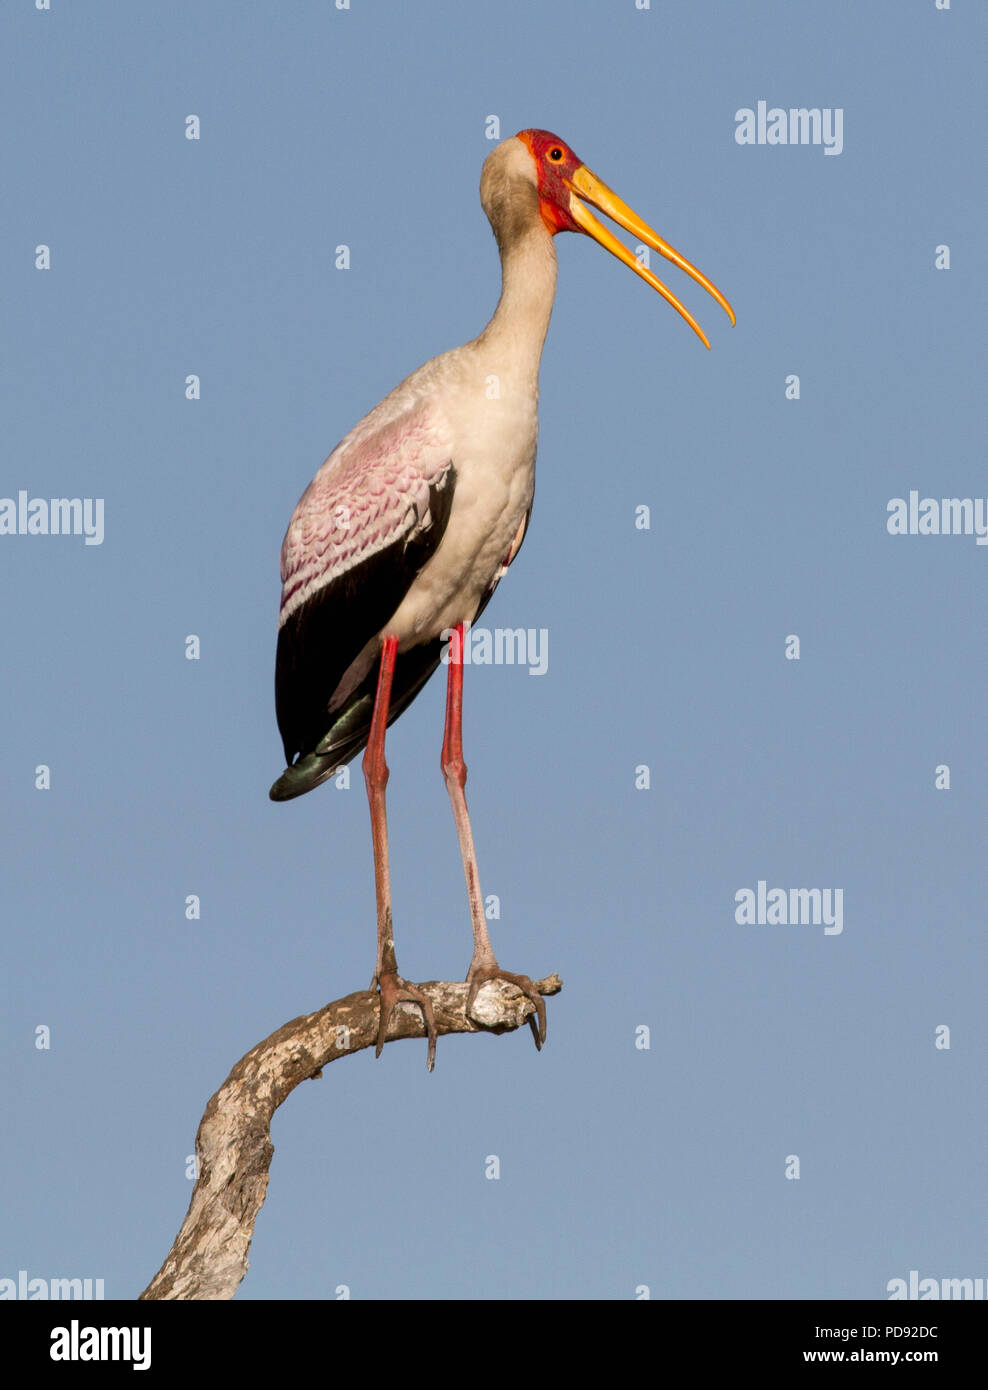 Giallo-fatturati Stork seduta sul pesce persico Foto Stock